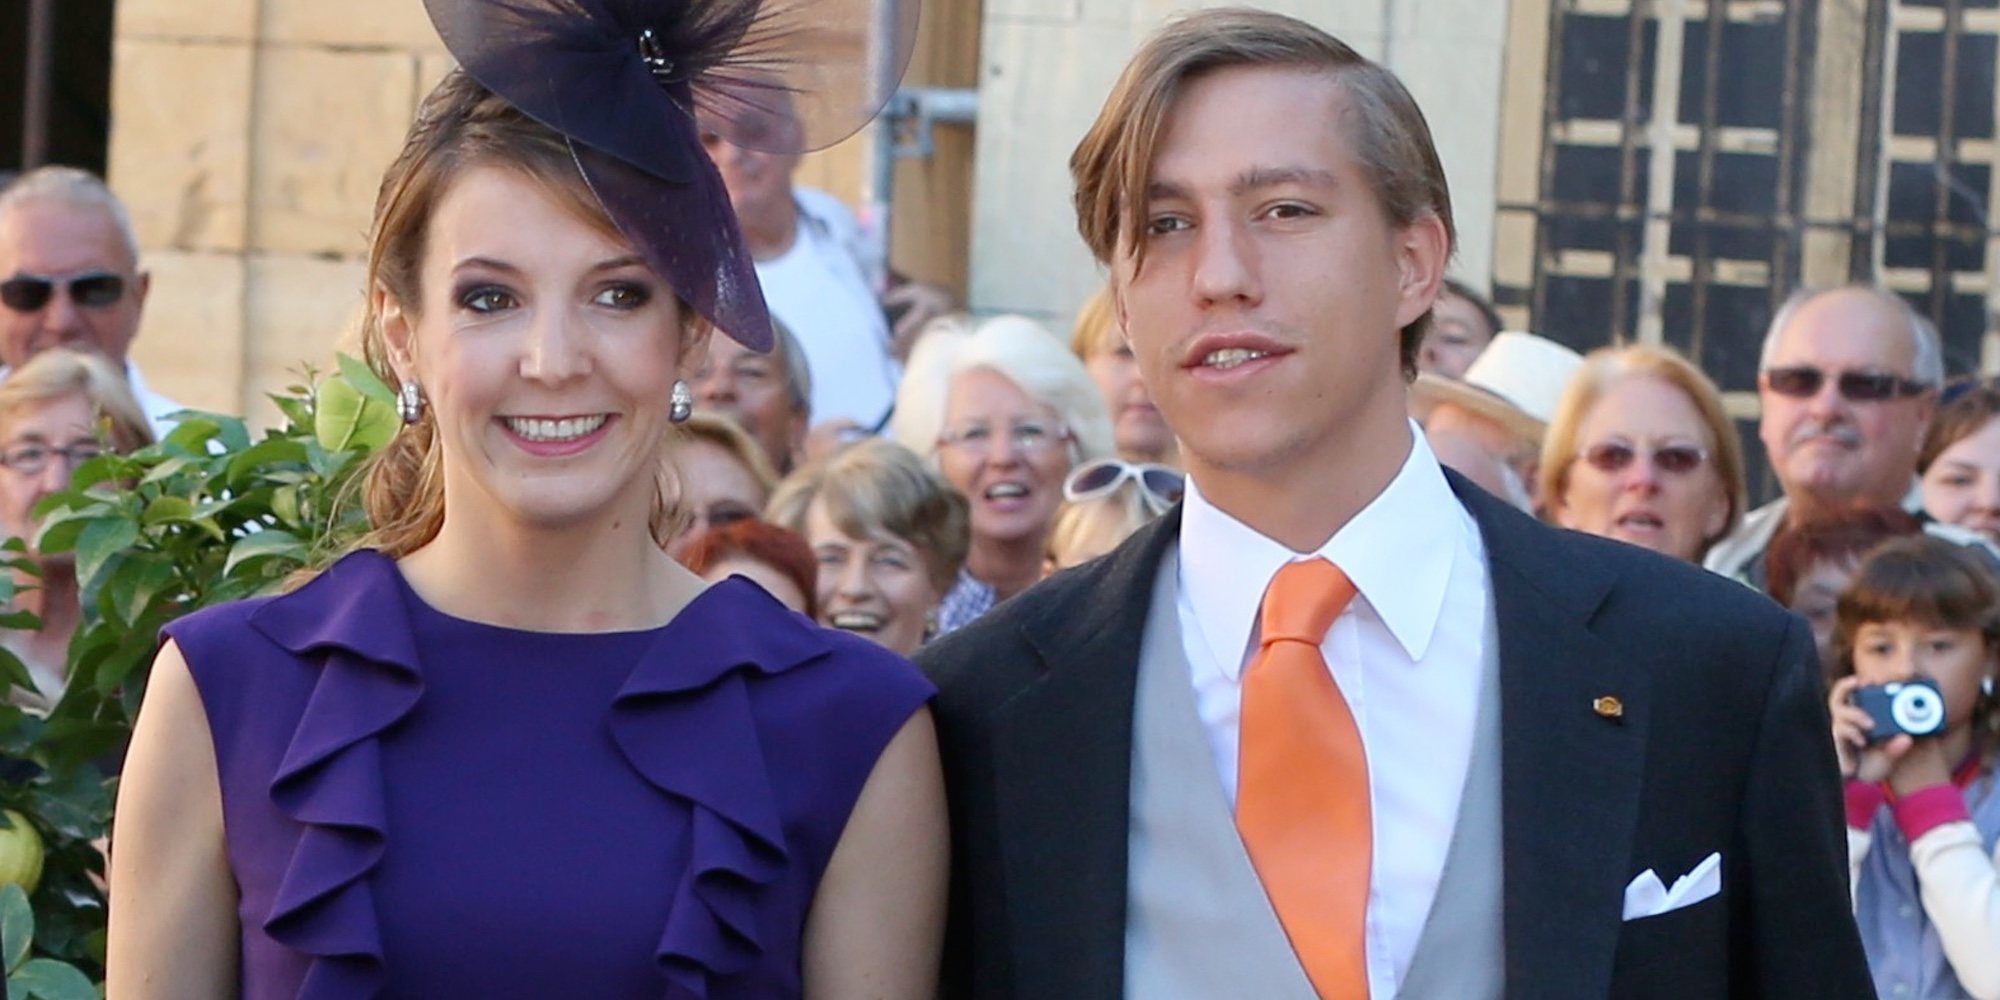 La reacción de Tessy de Luxemburgo al anuncio del compromiso de su exmarido, Luis de Luxemburgo, con Scarlett-Lauren Sirgue